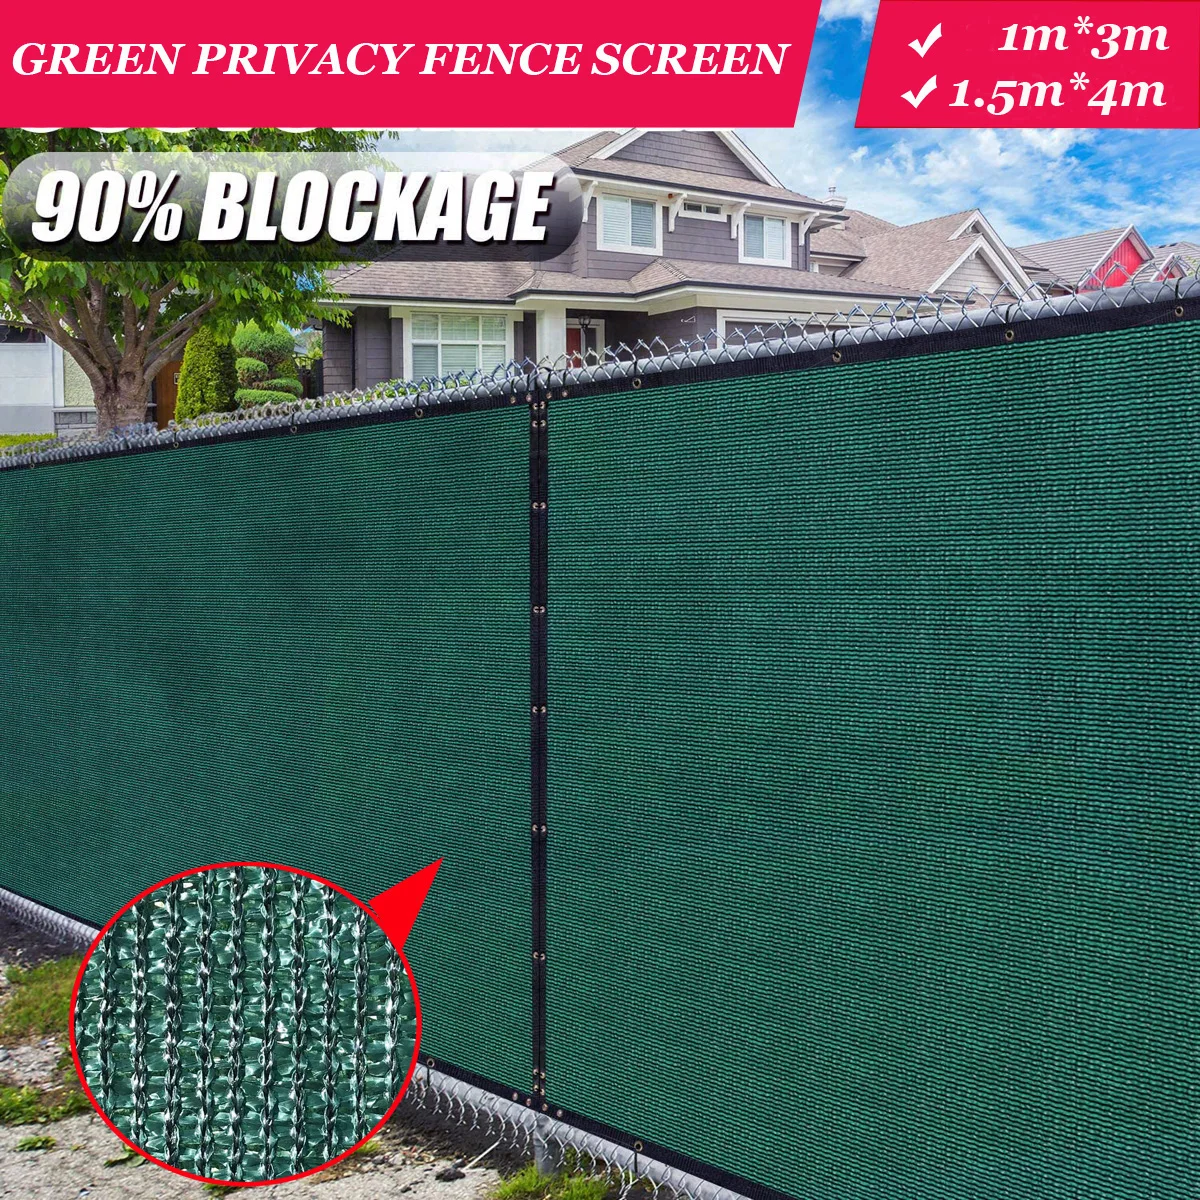 Parabrisas de pantalla de privacidad de valla verde, VALLA DE PRIVACIDAD DE patio trasero resistente, cubierta de balcón, pantalla de privacidad con fijaciones y ojales